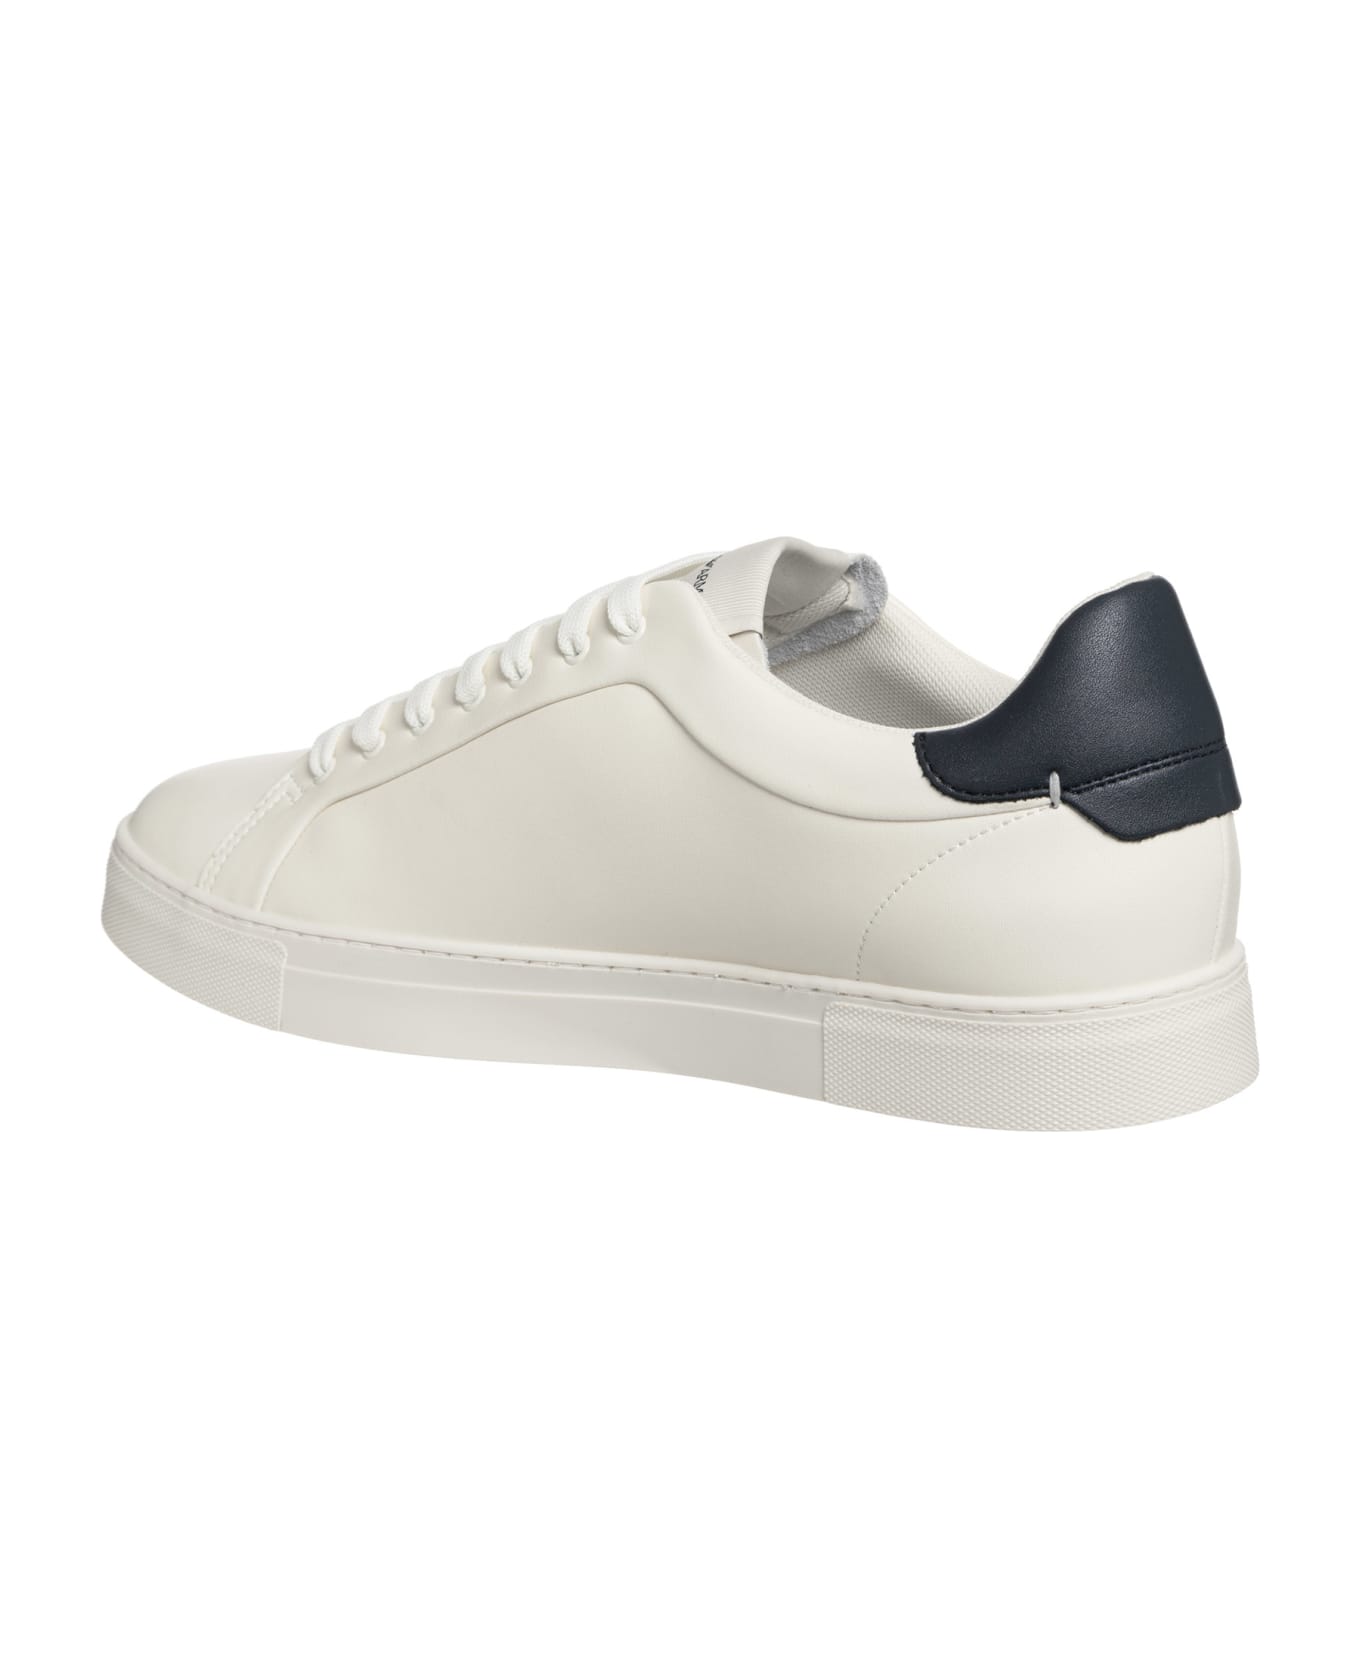 Emporio Armani Leather Sneakers - White, navy